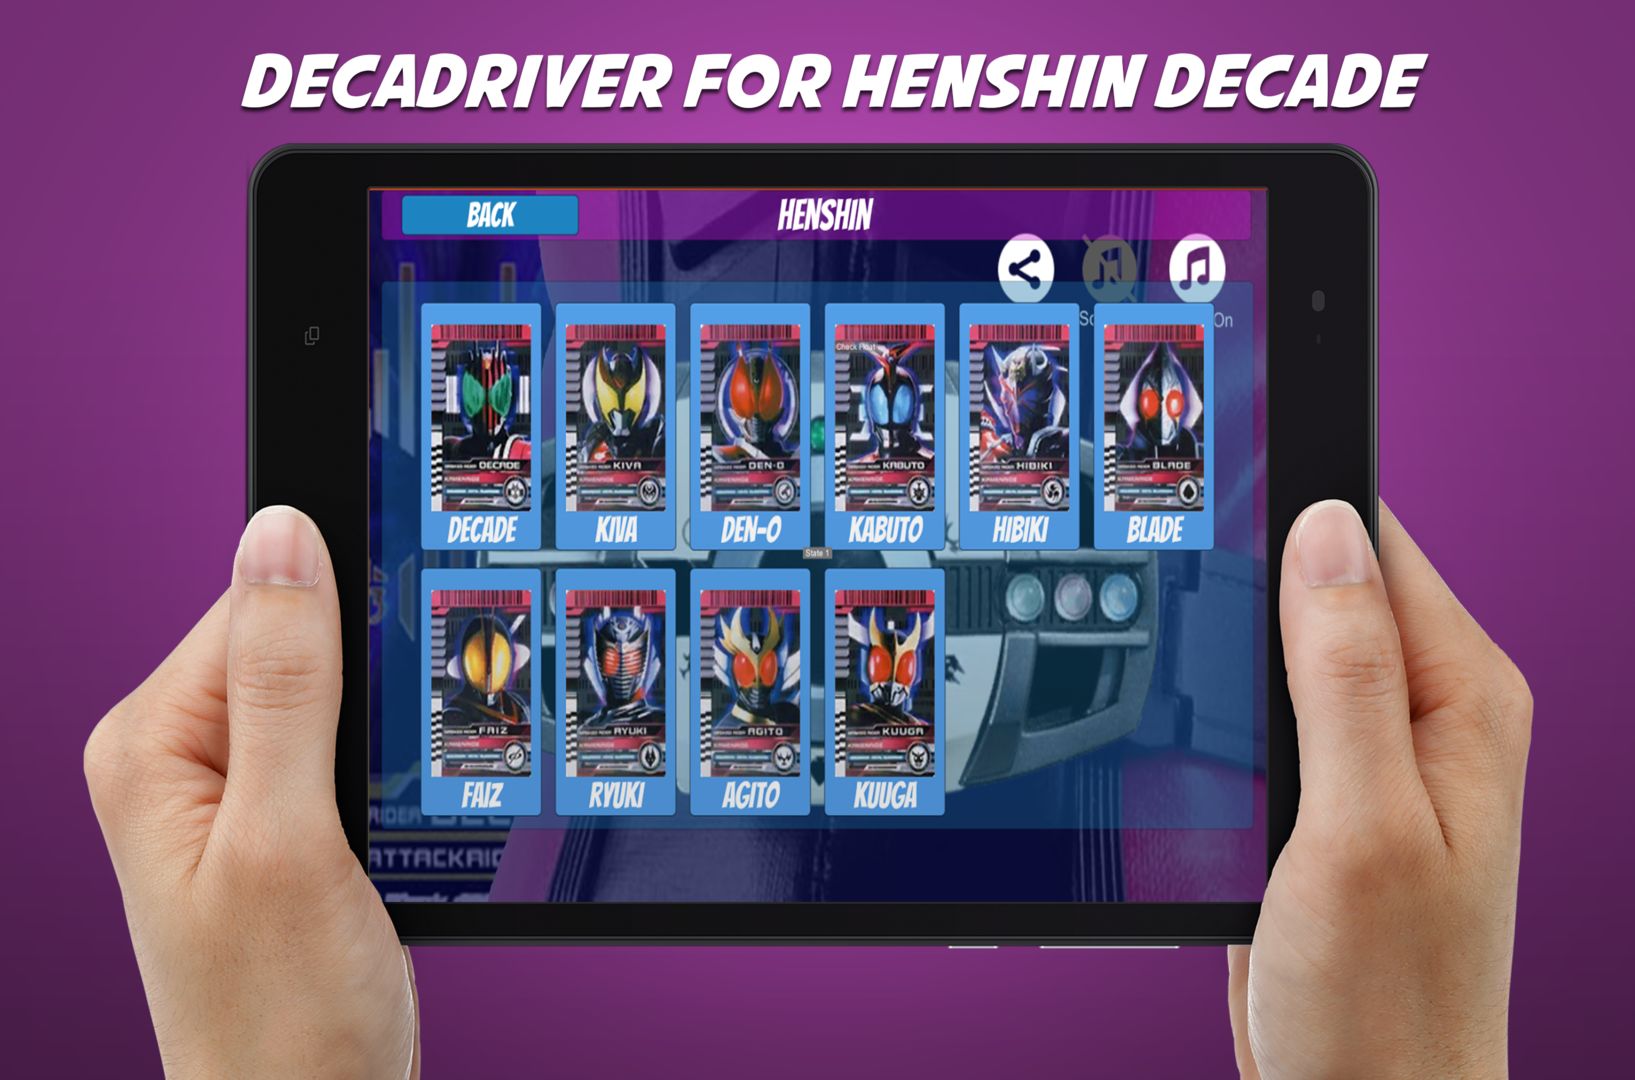 Screenshot of DX Henshin belt for decade henshin